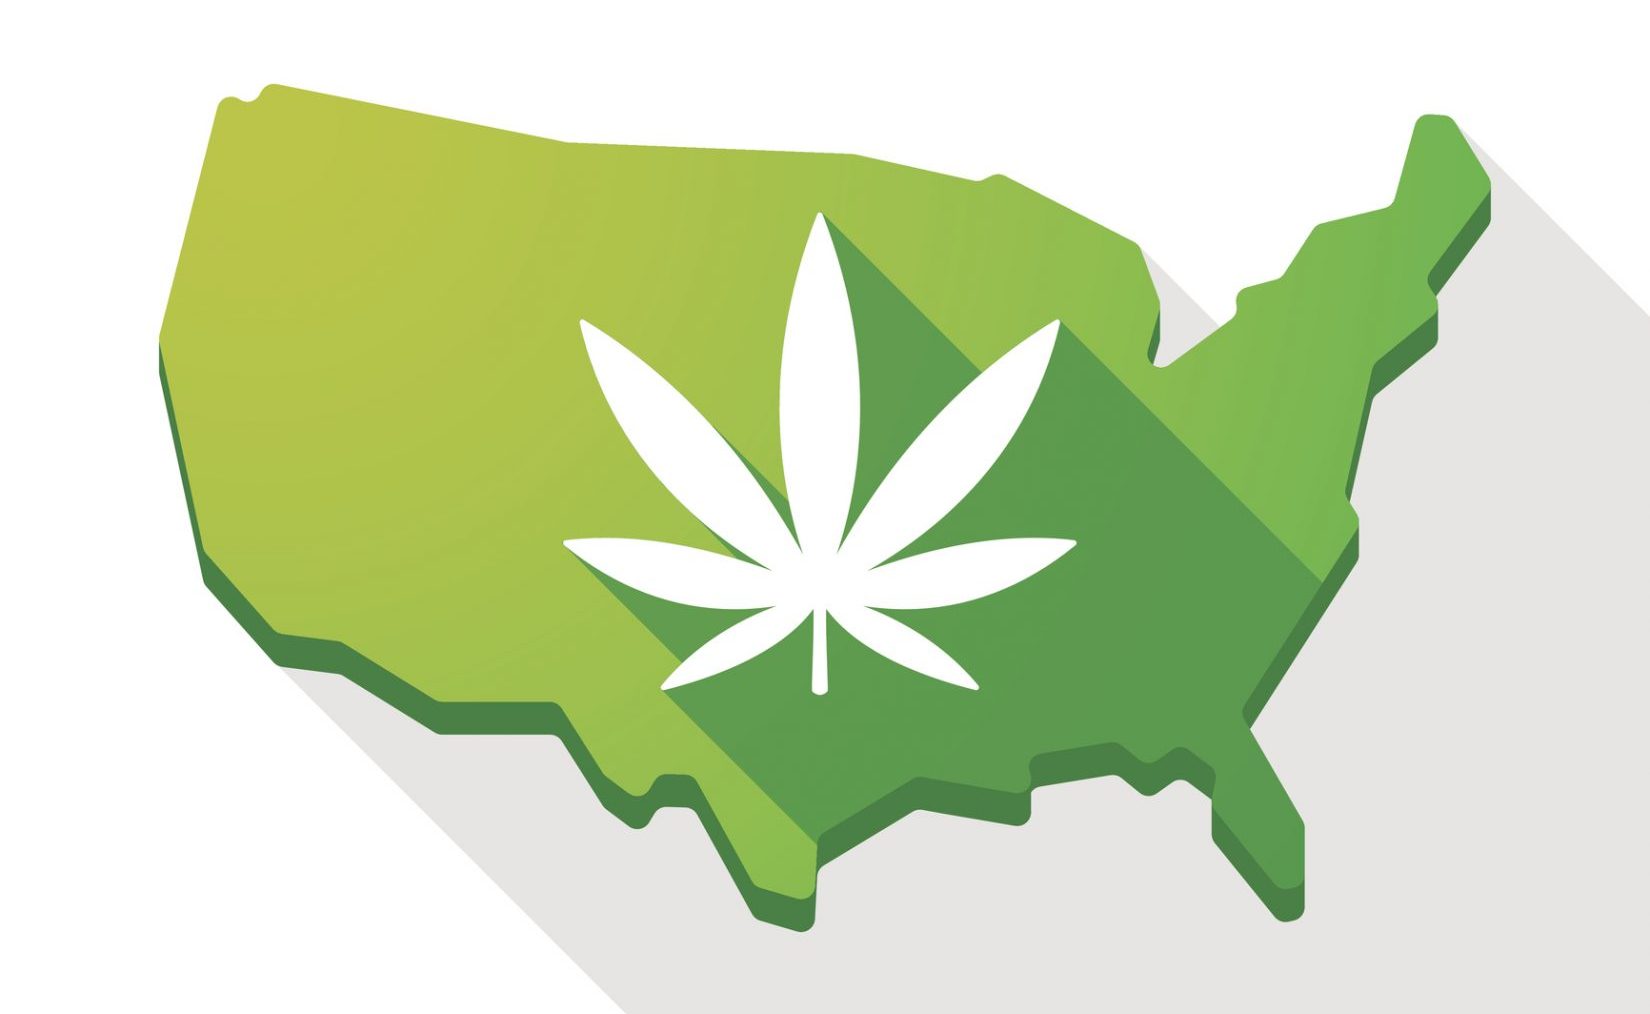 USA map icon with a marijuana leaf